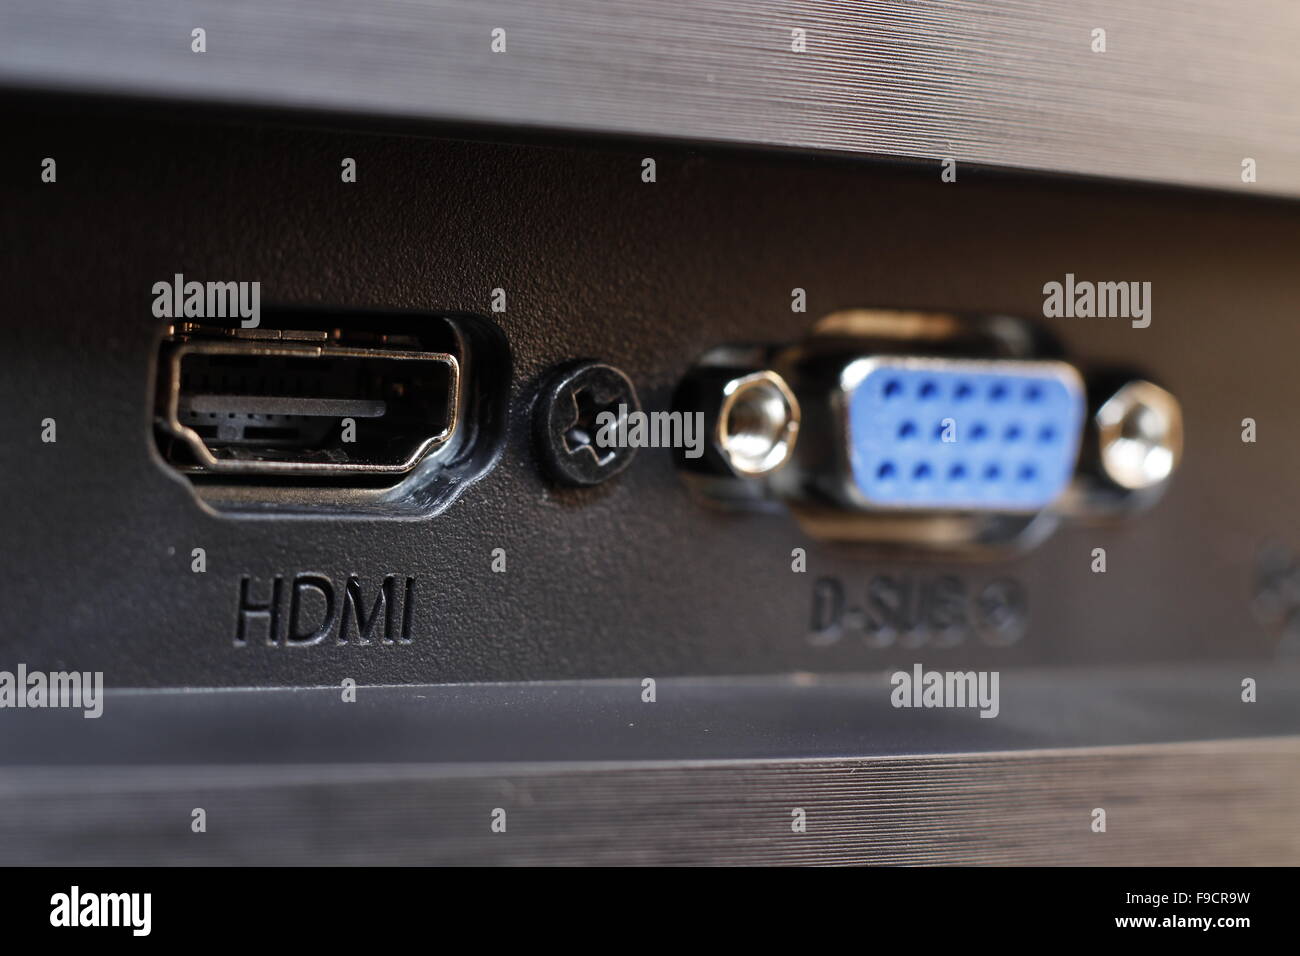 HDMI-Anschluss auf einem Laptopcomputer Stockfotografie - Alamy